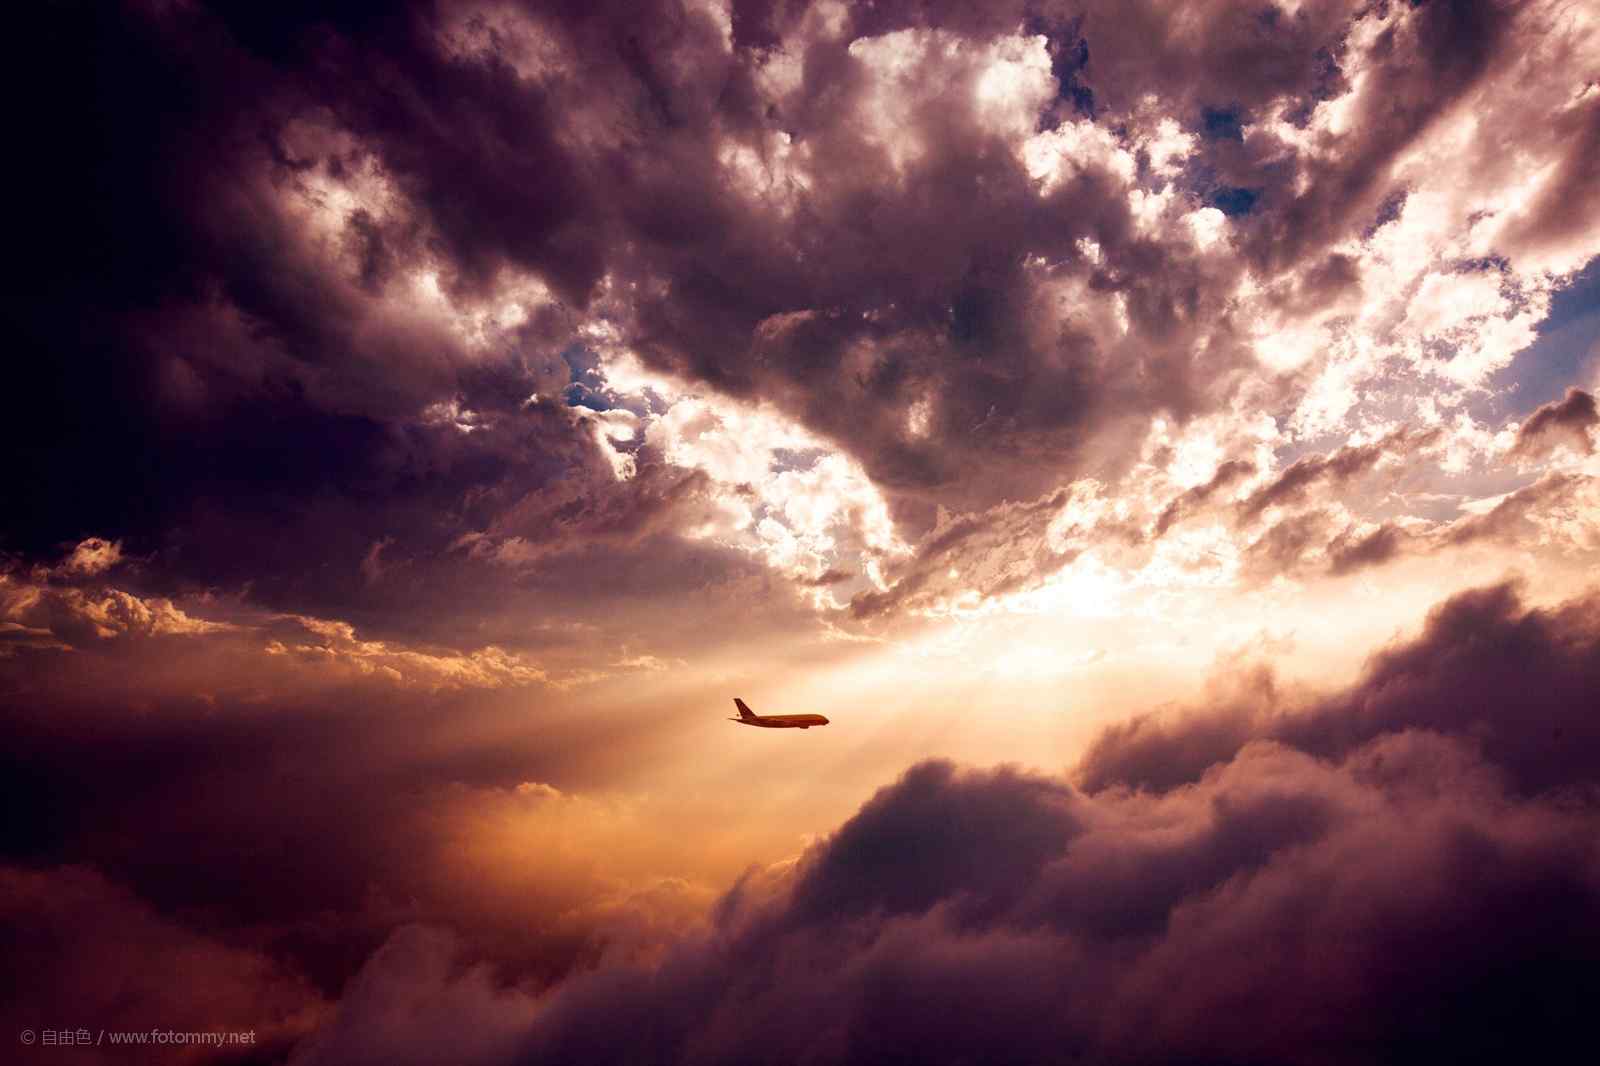 飞机翱翔穿过日落唯美的晚霞风景图片高清桌面壁纸